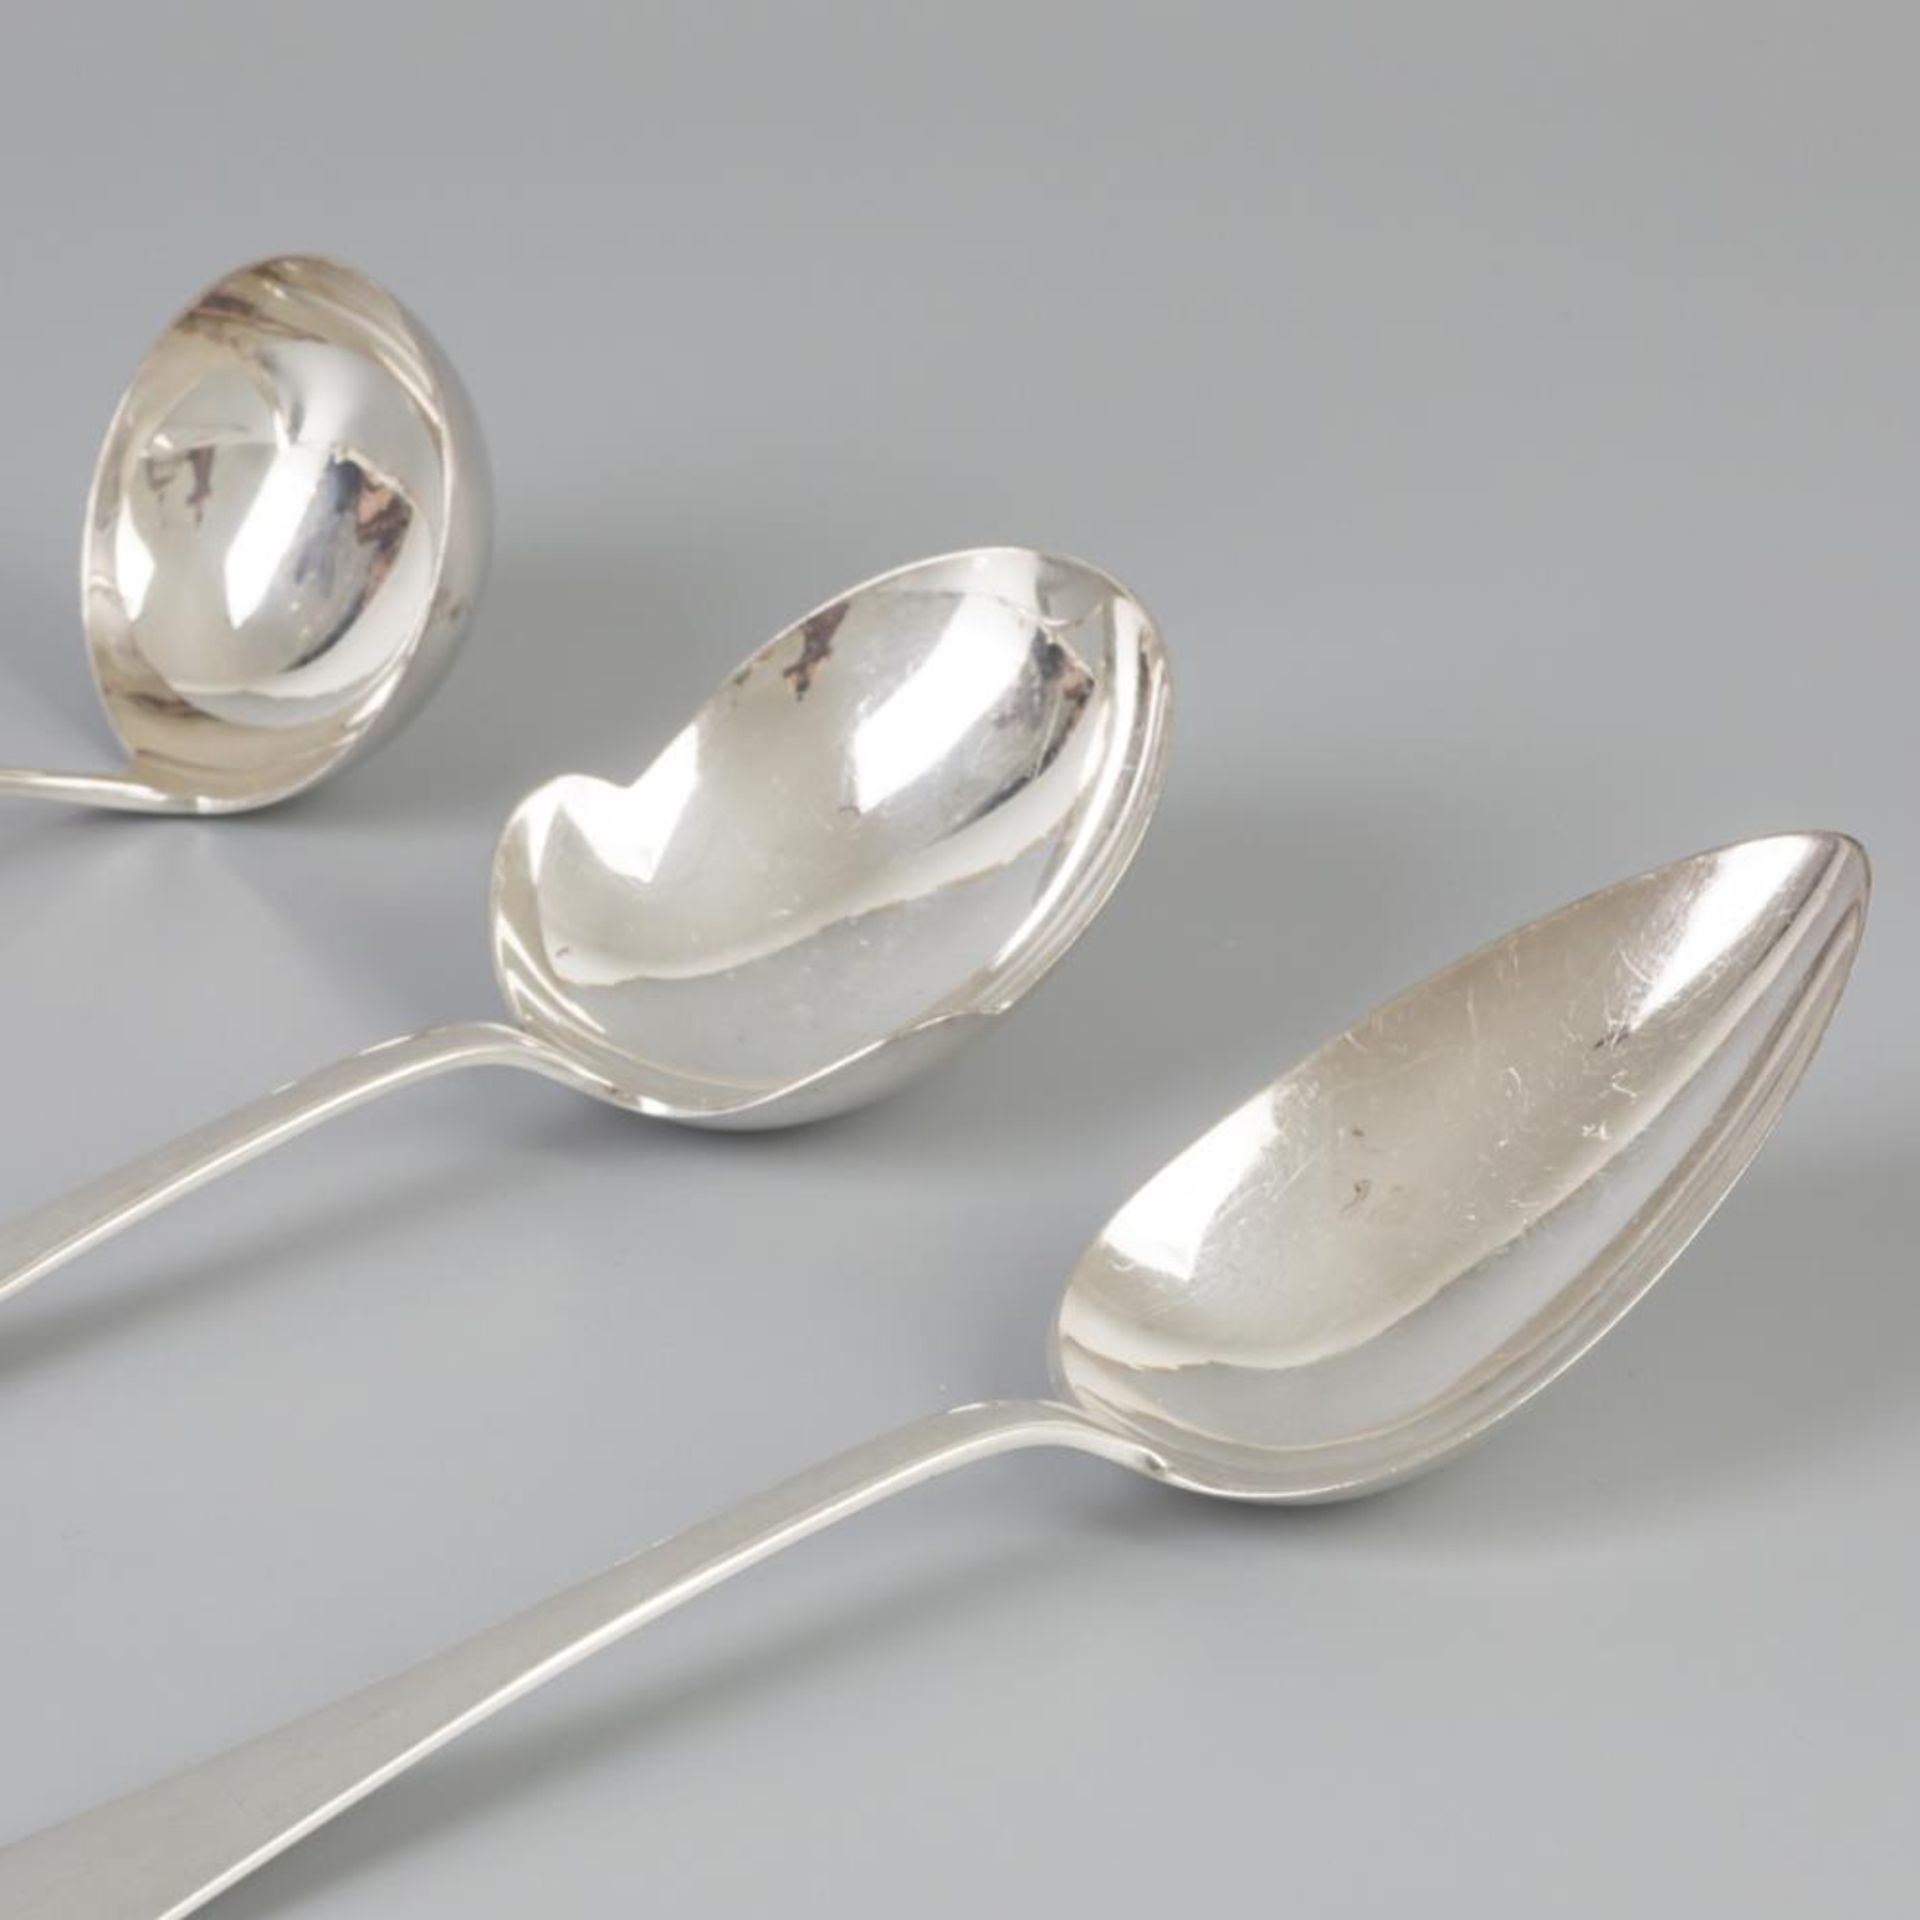 3 piece set of ladles "Haags Lofje" silver. - Bild 2 aus 7